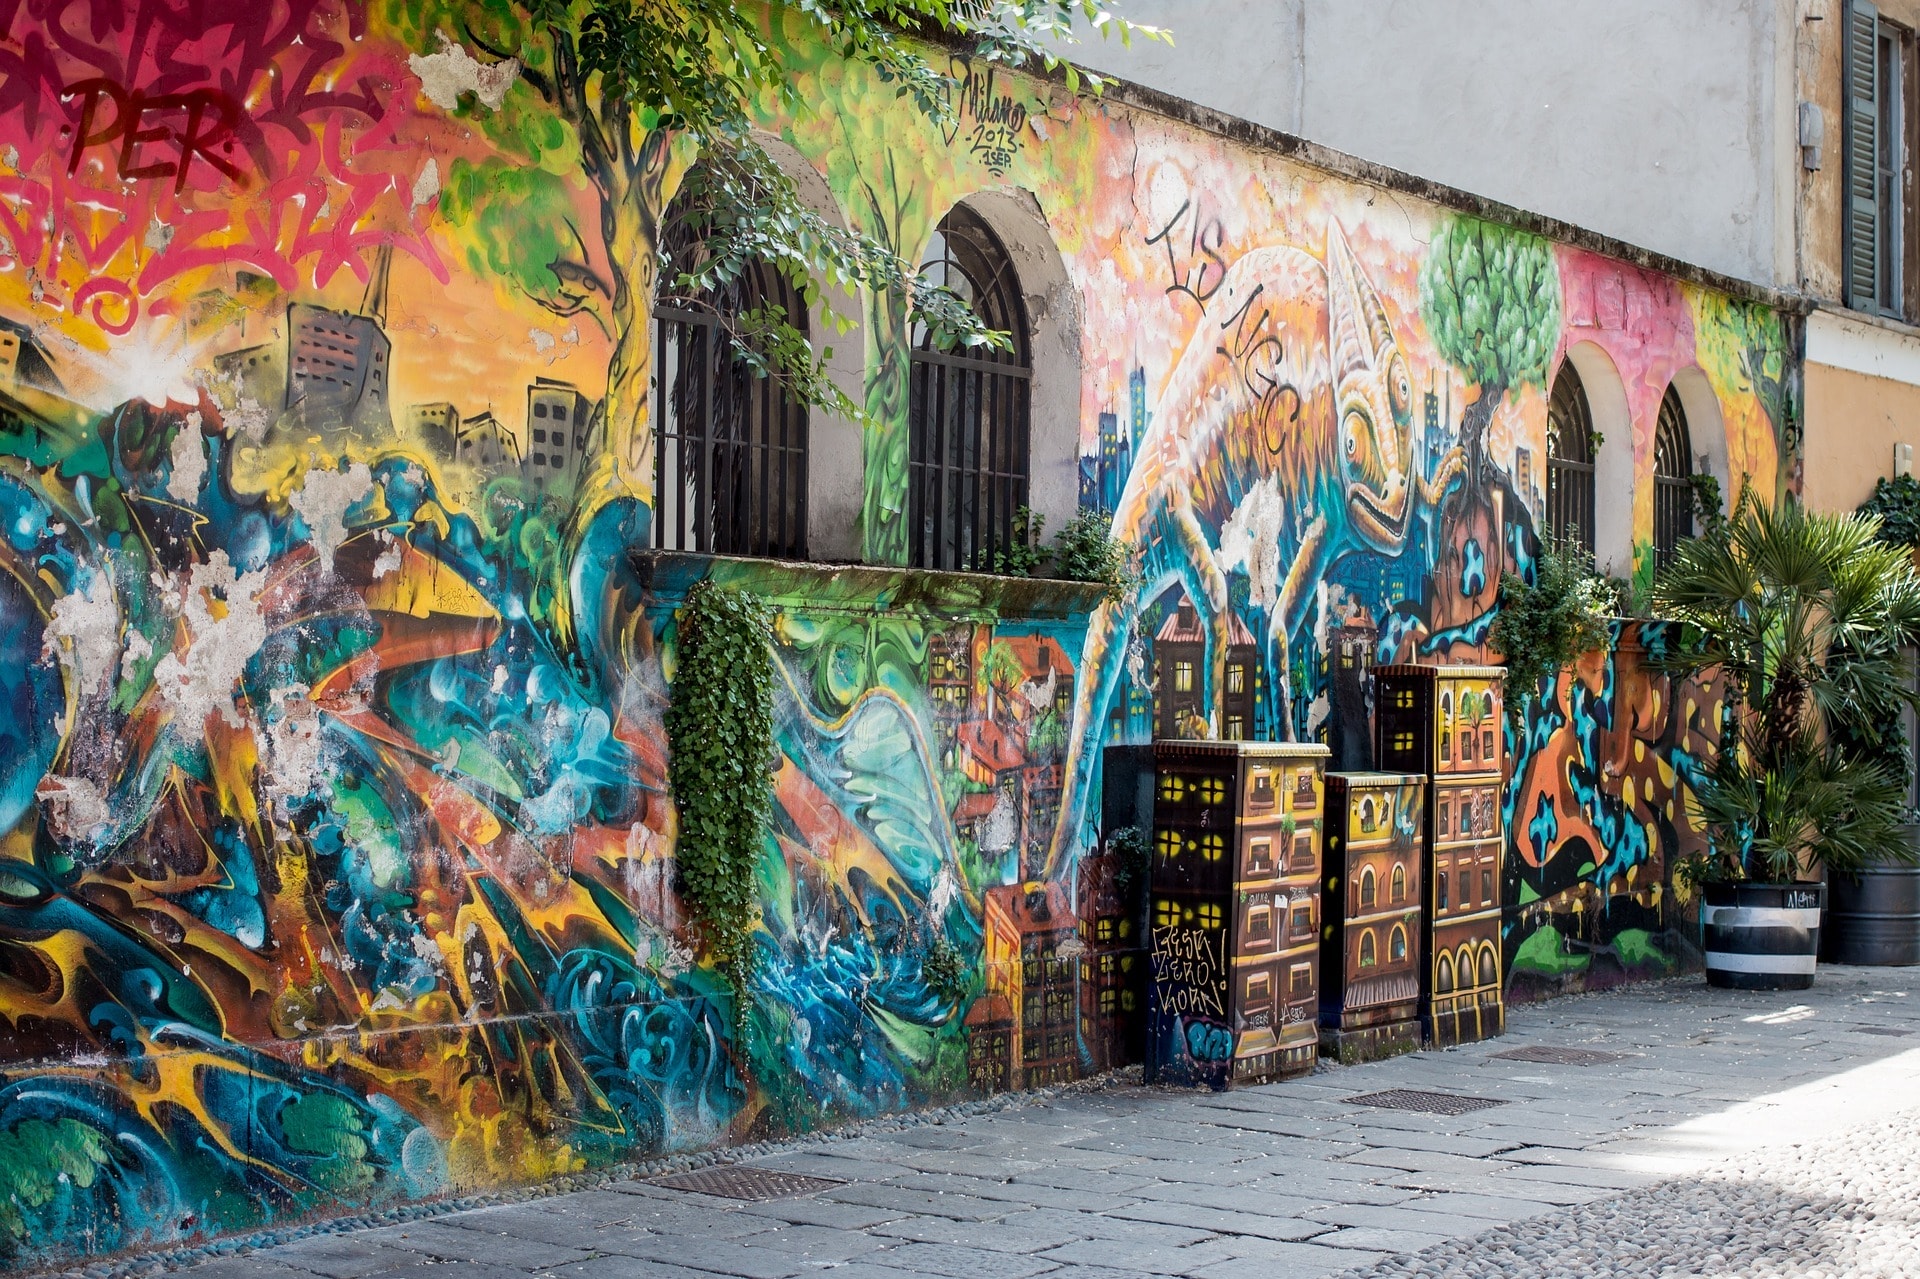 Graffiti artists tag Milan's famed Galleria arcade